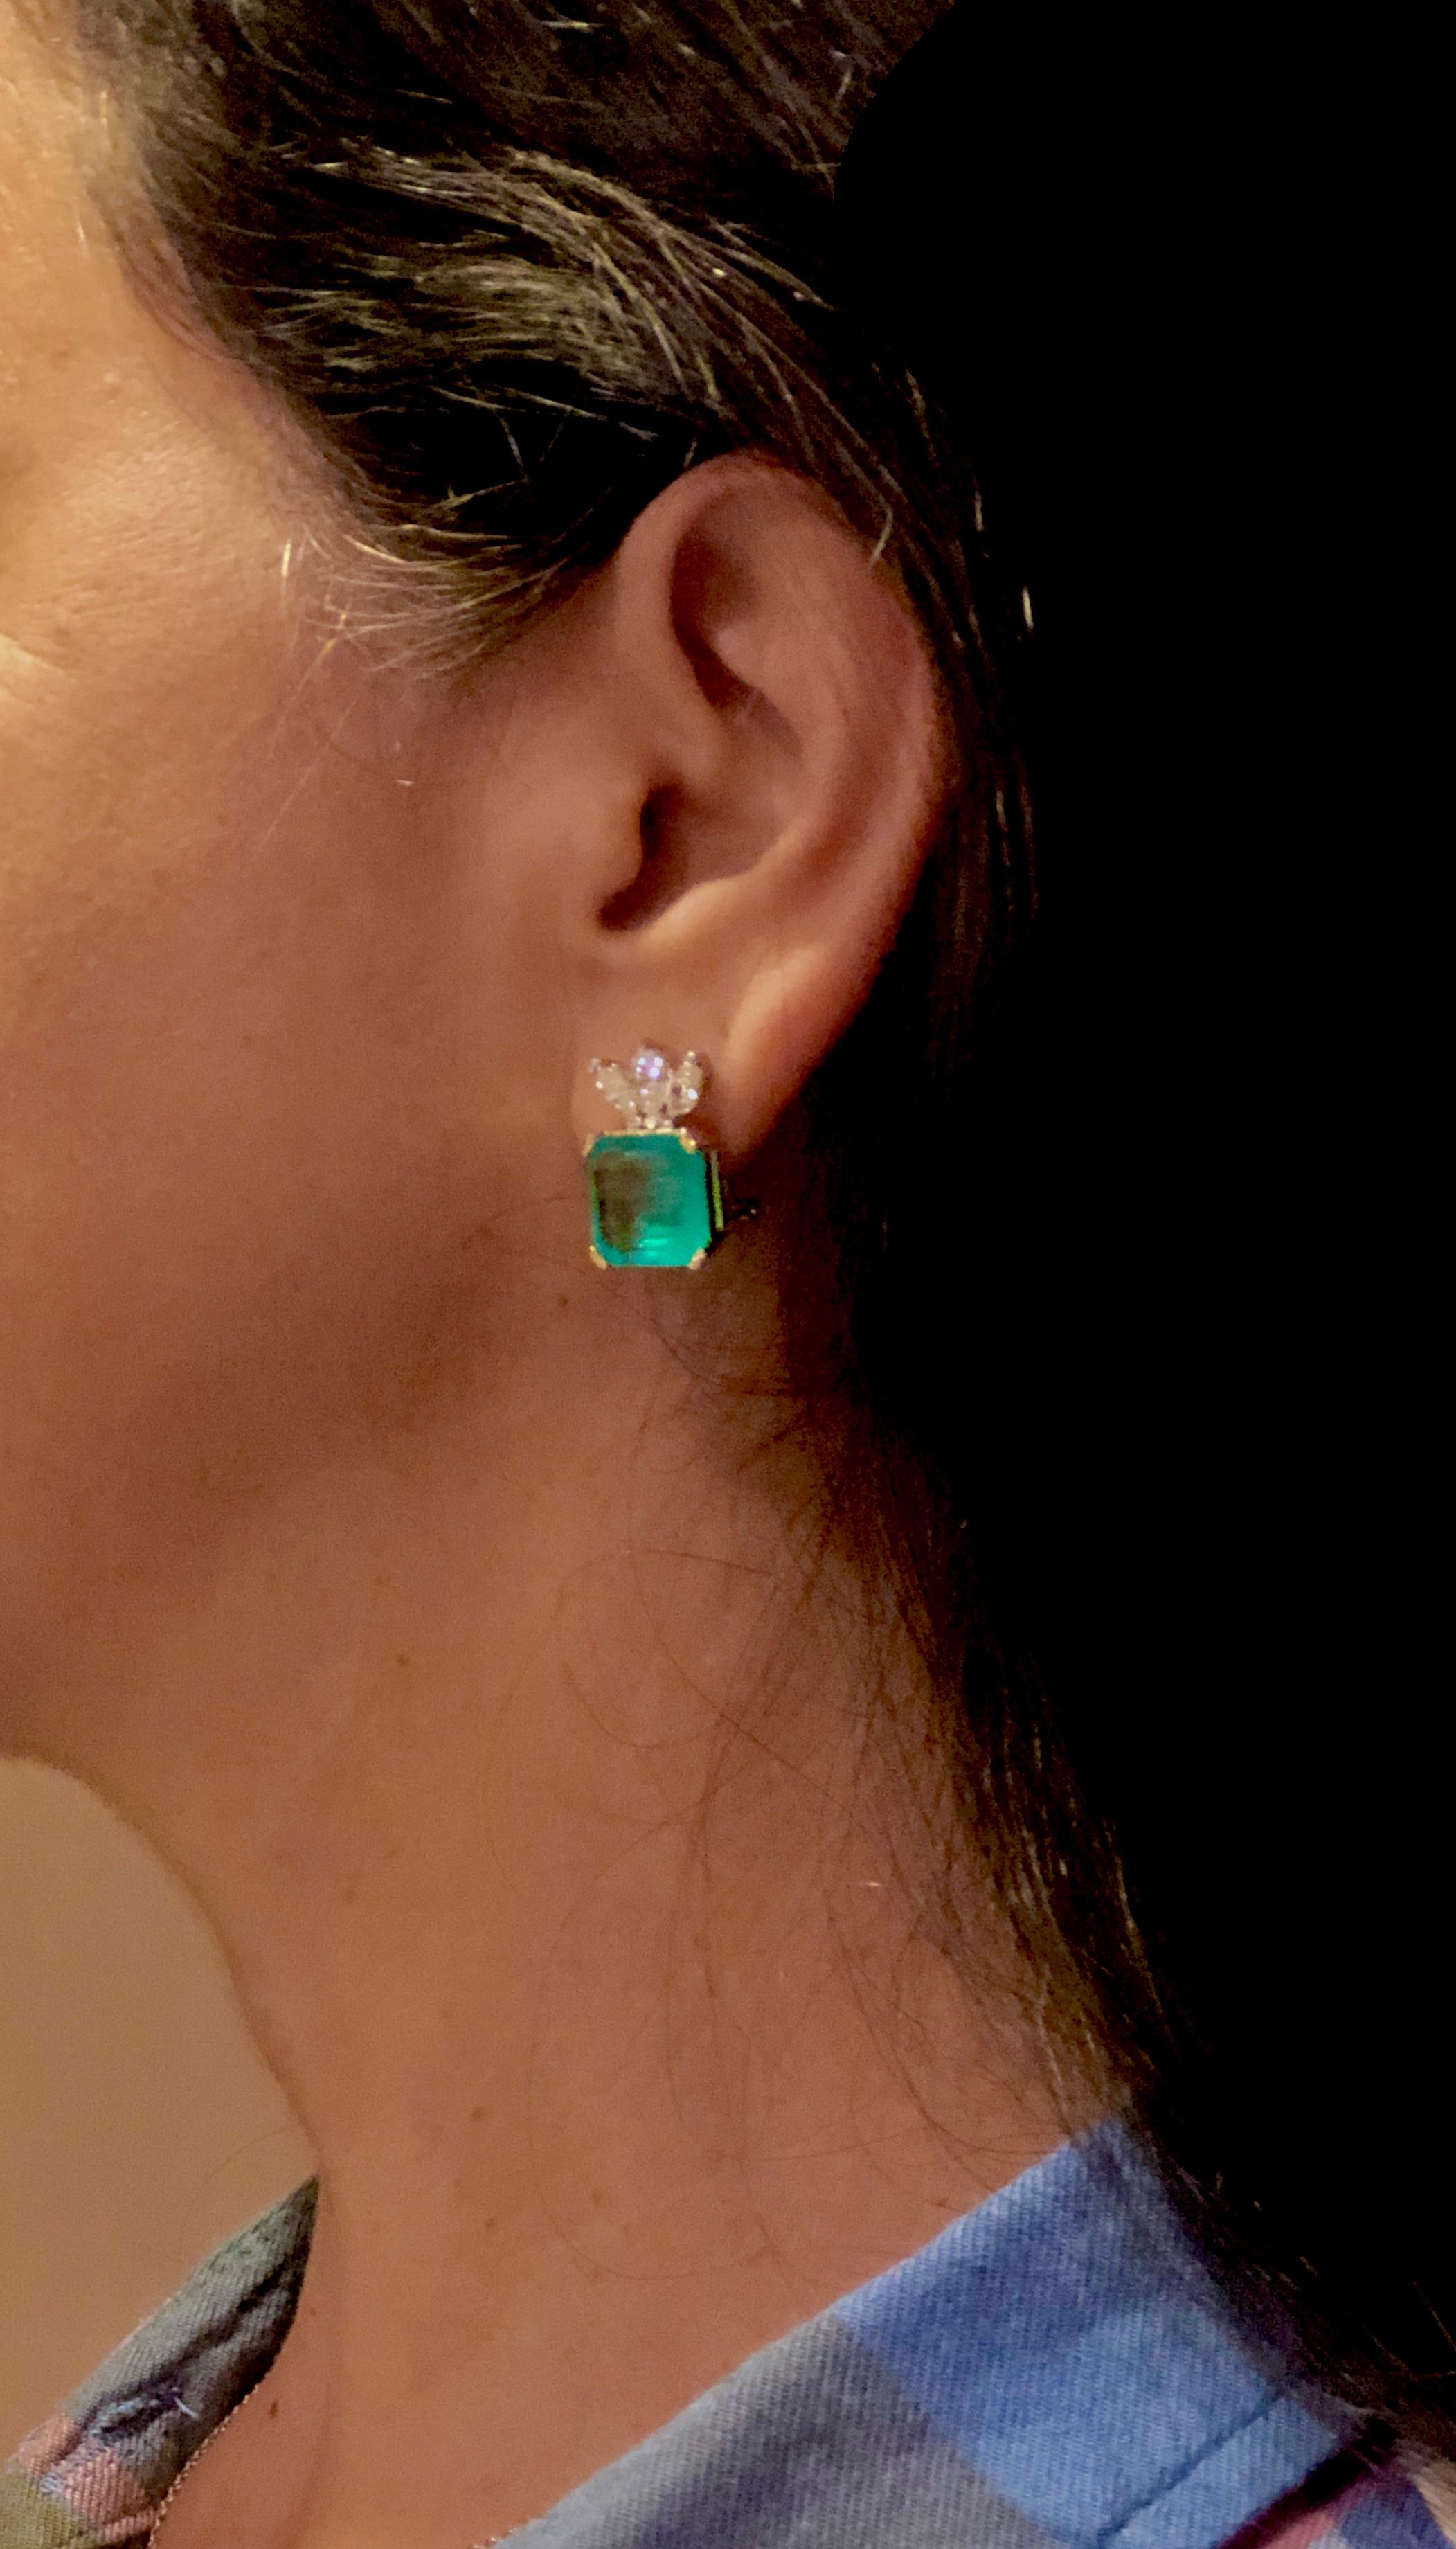 colombian emeralds earrings